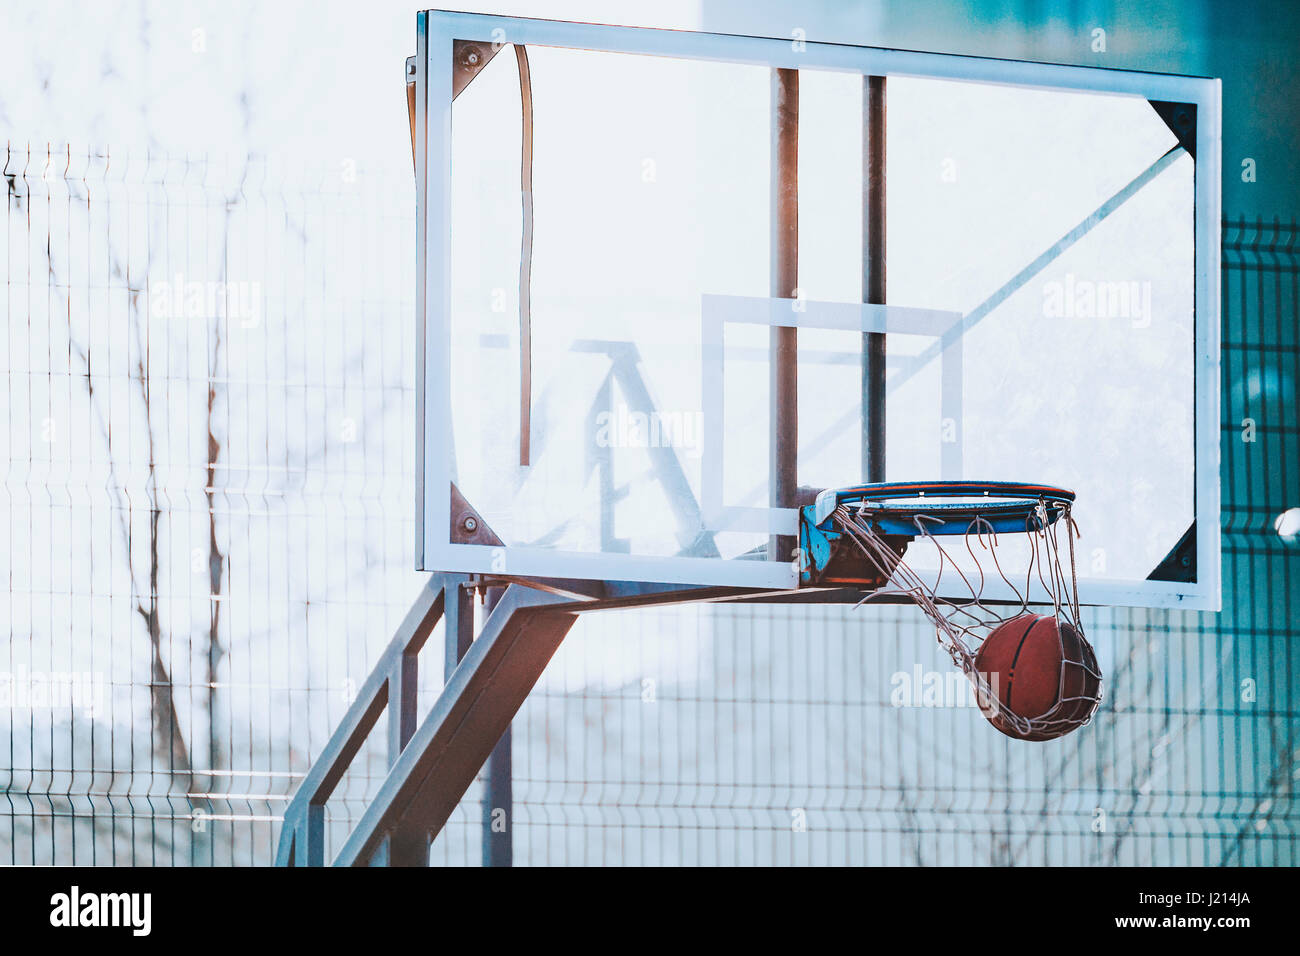 Image d'arrière-plan d'une aire de basket-ball Banque D'Images